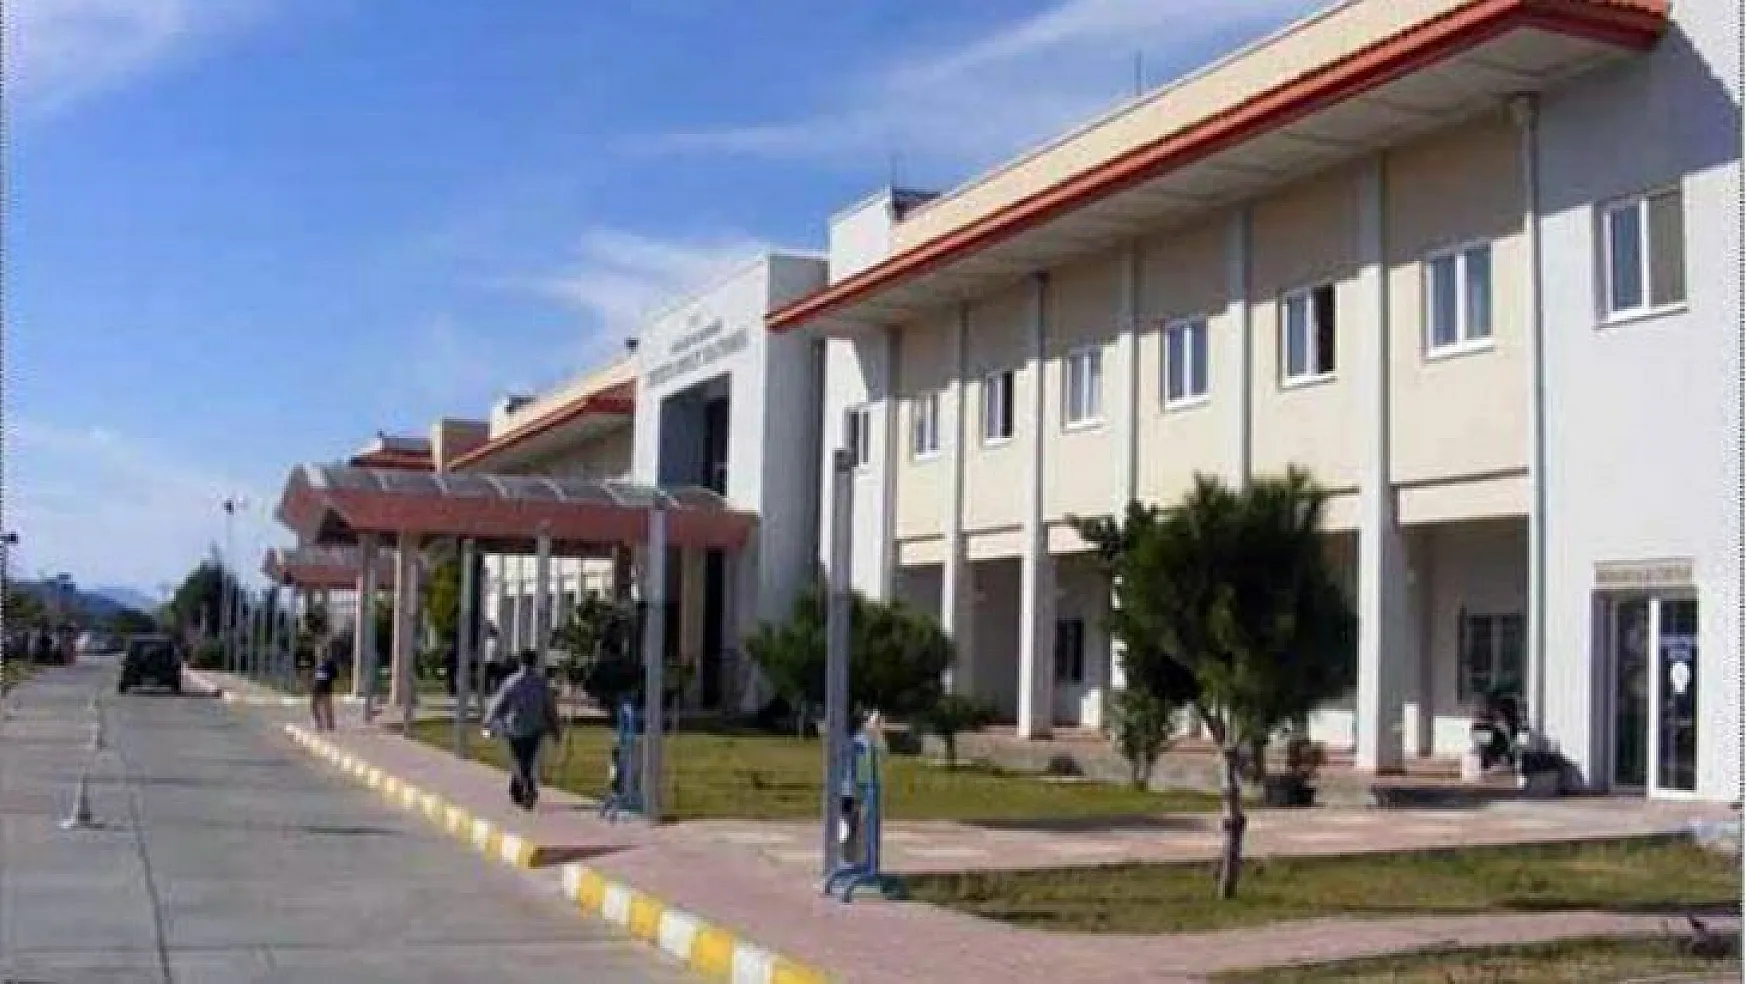 Fethiye'de sahte sağlık raporu operasyonu: 7 gözaltı